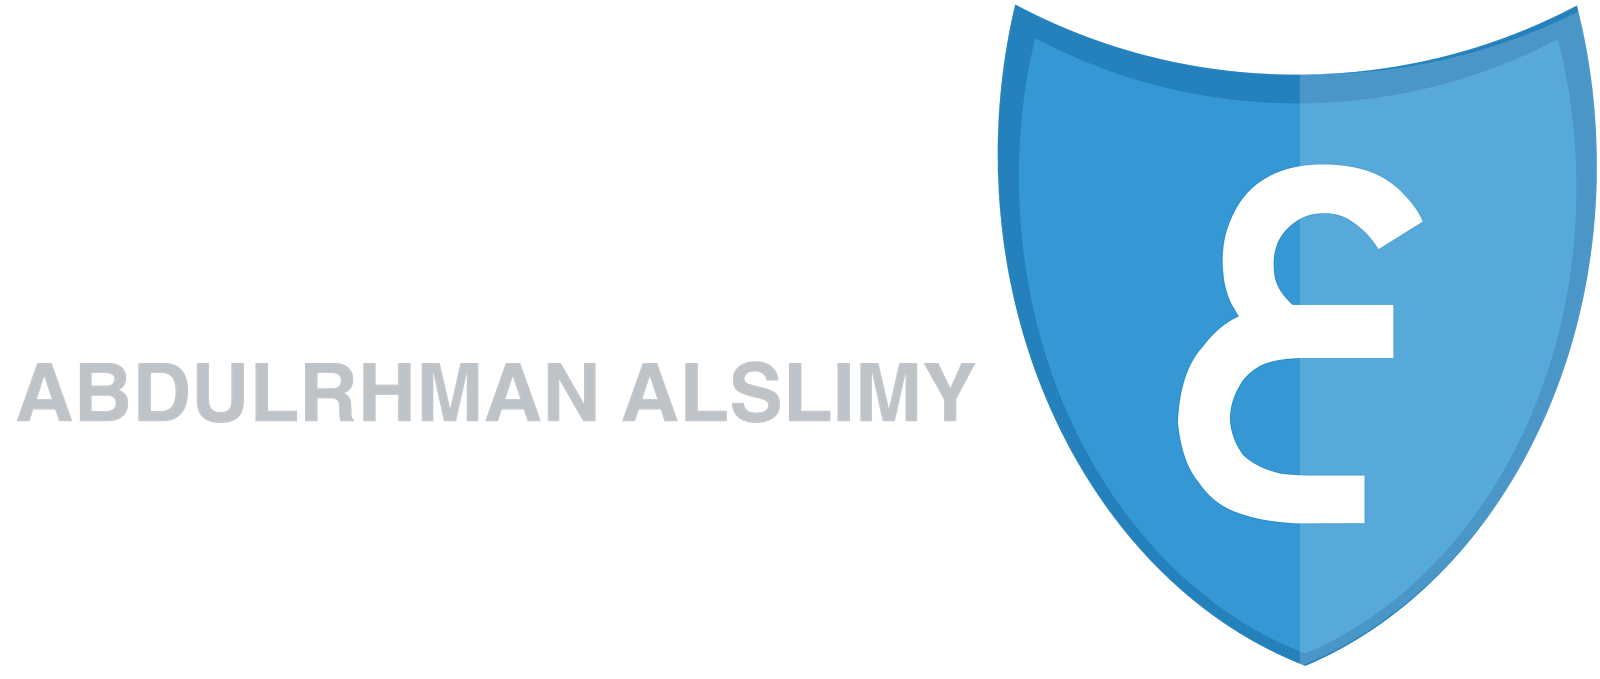 ABDULRHMAN ALSLIMY